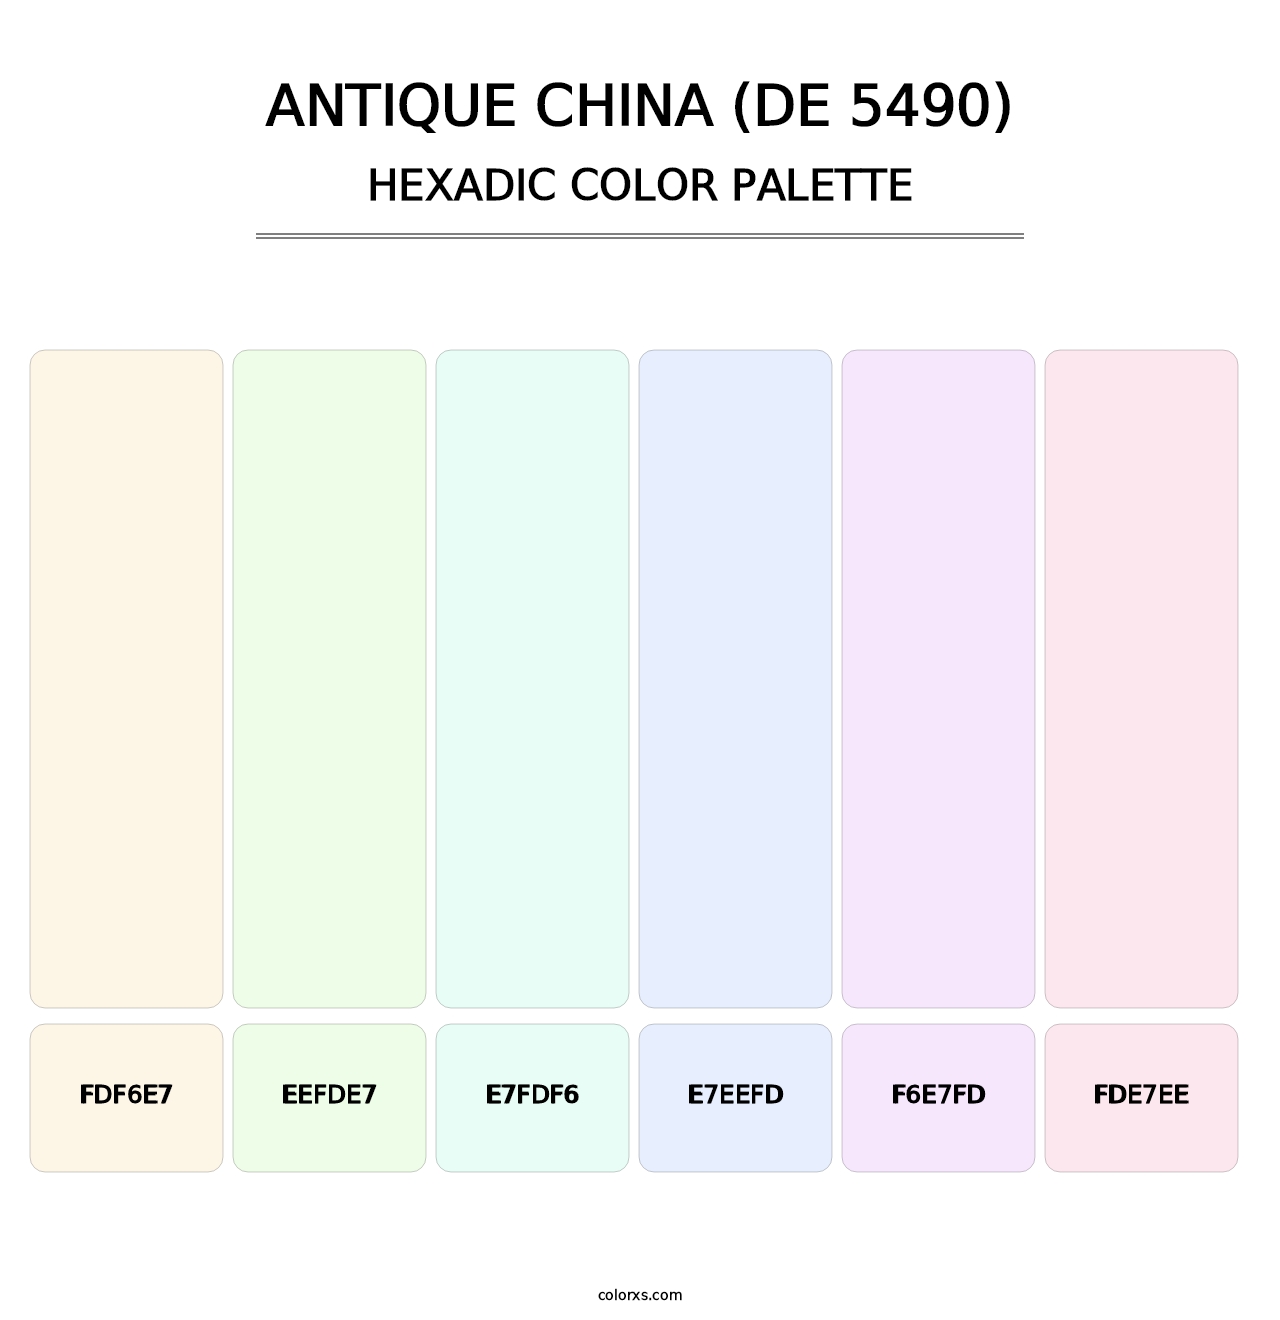 Antique China (DE 5490) - Hexadic Color Palette